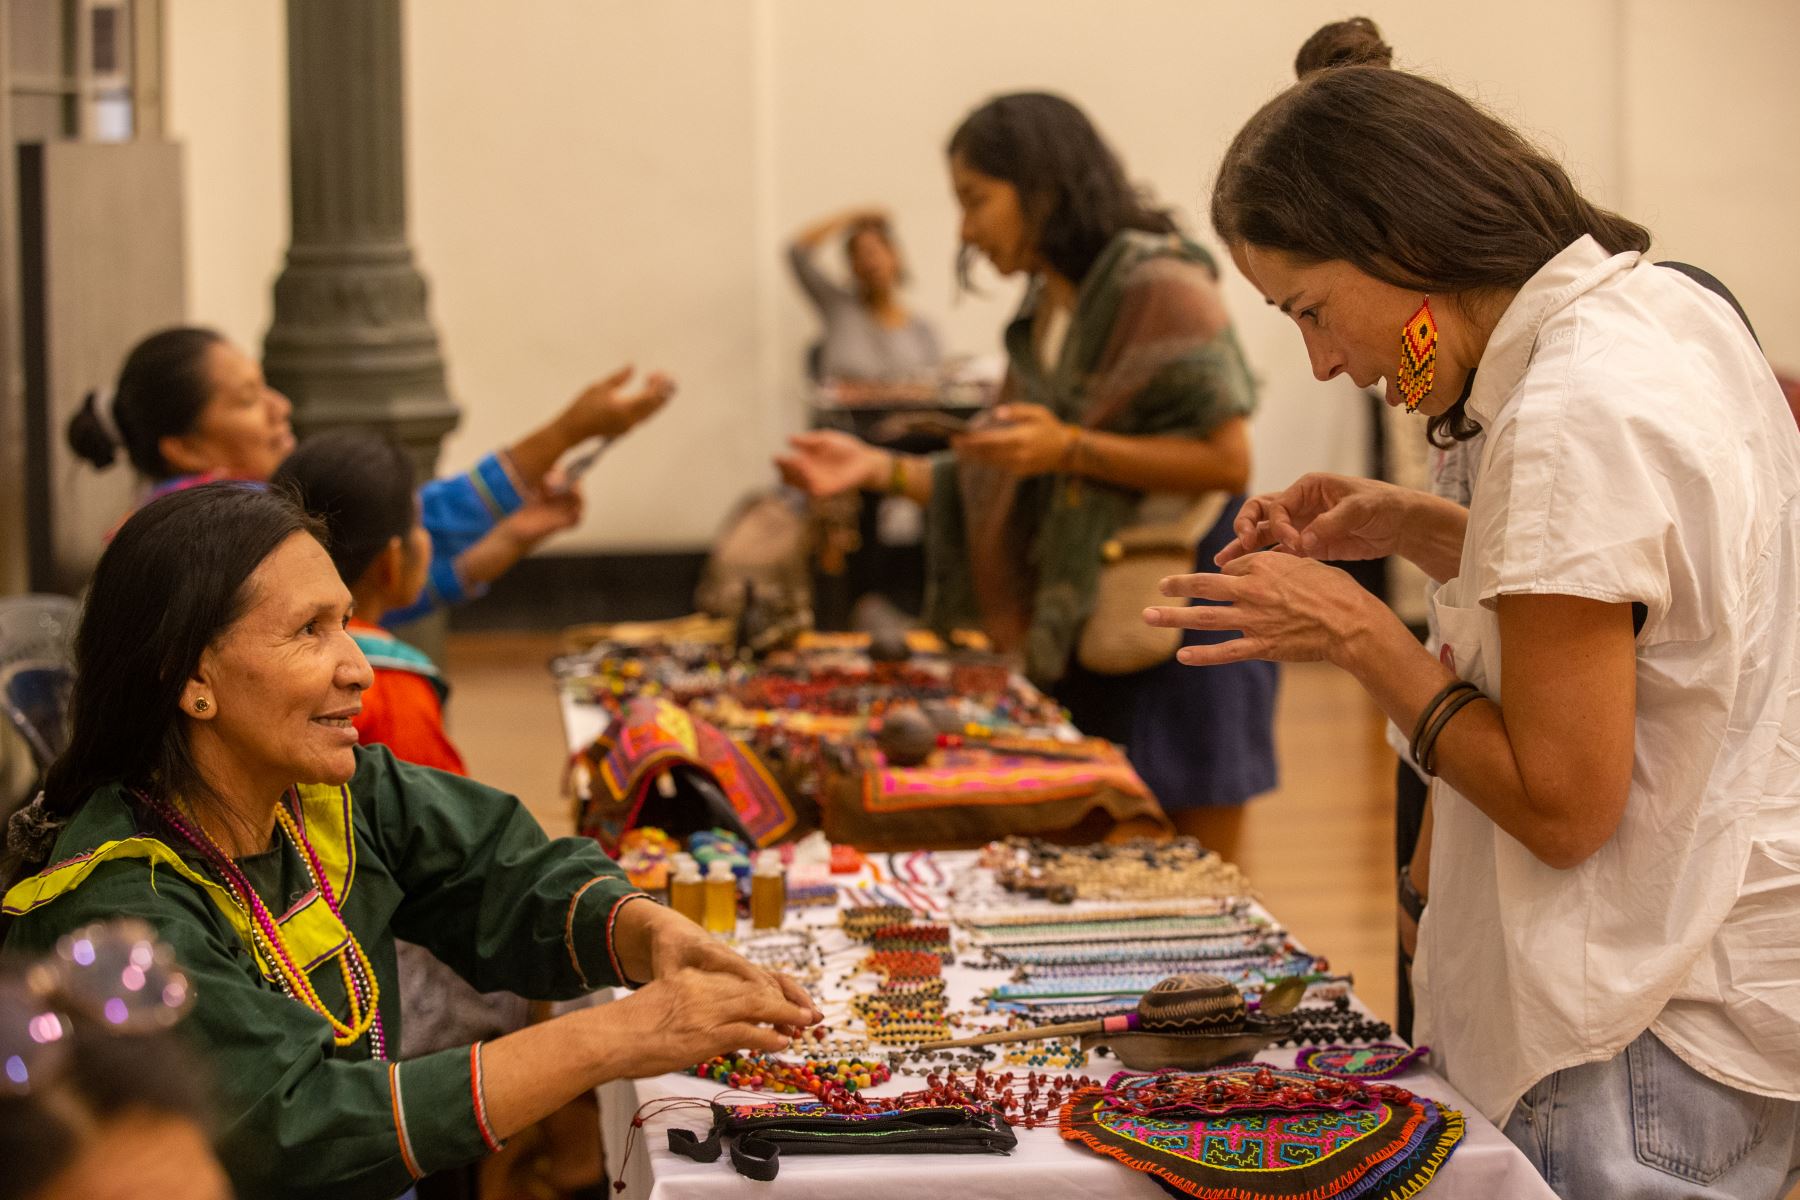 Como cada mes, el Museo de Arte de Lima abre sus puertas a precios populares para una velada de diversión y cultura para toda la familia. El público pudo disfrutar de la exposición-venta de productos de la comunidad Shipiba. Foto: ANDINA/Tatiana Gamarra